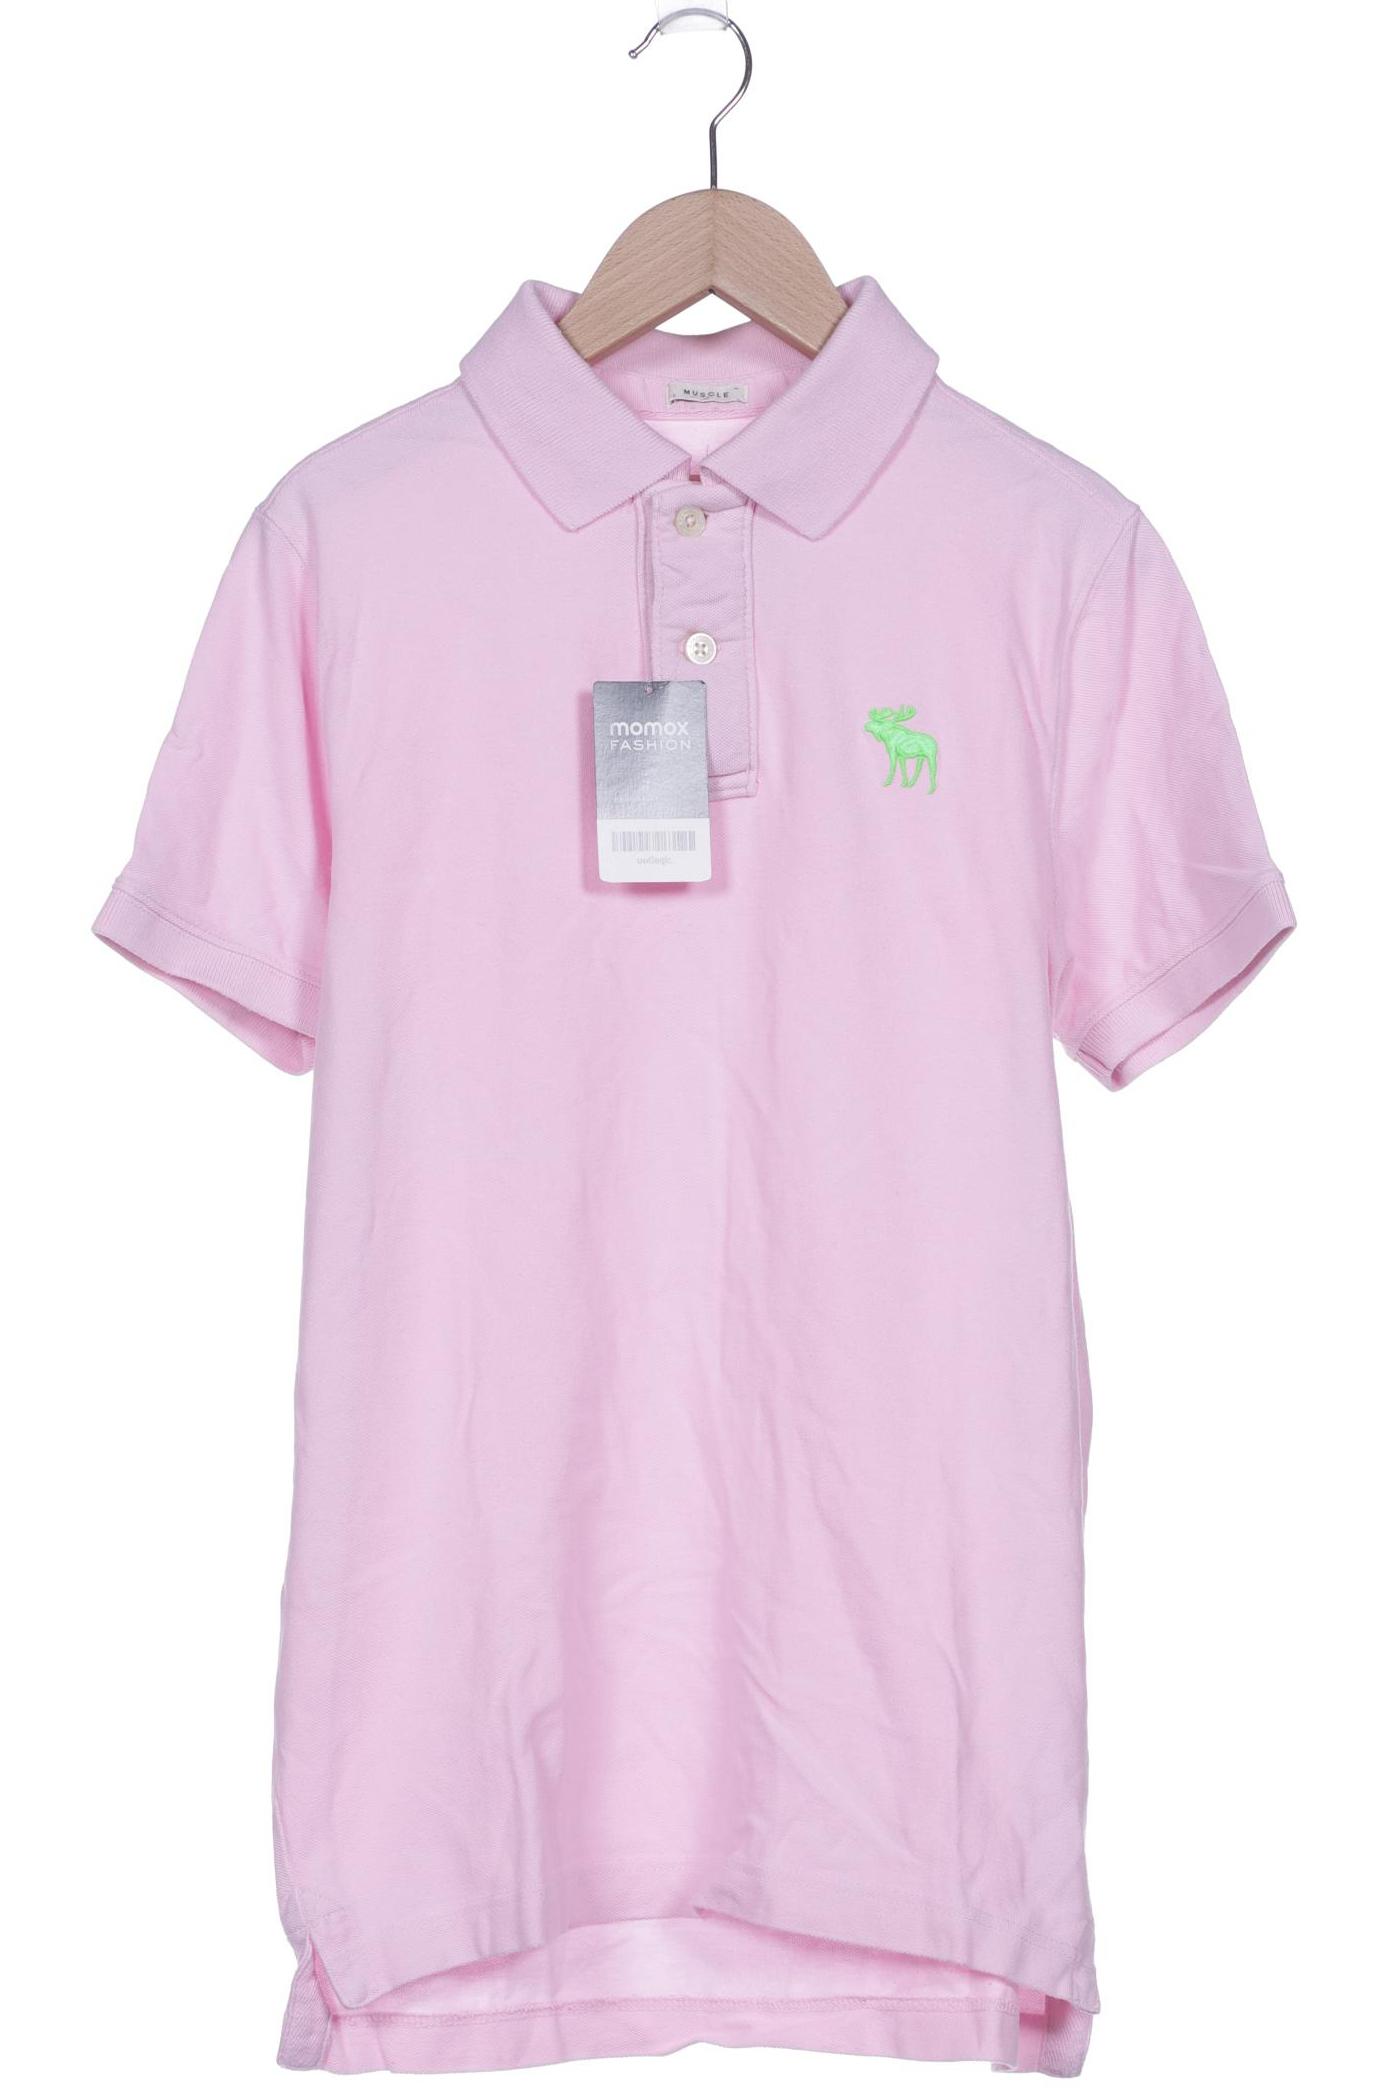 Abercrombie & Fitch Herren Poloshirt, pink von Abercrombie & Fitch